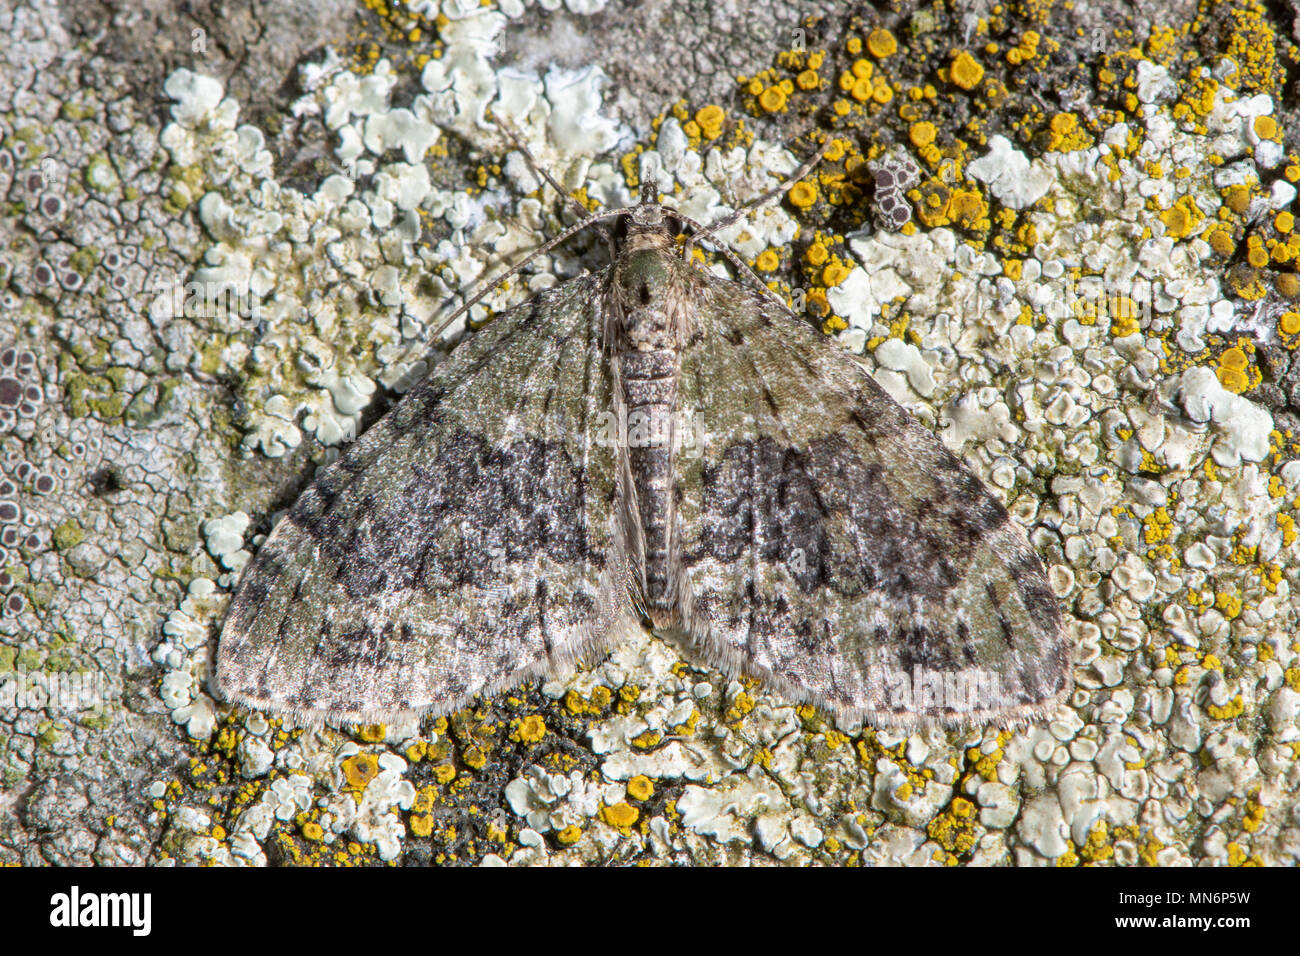 Giallo-escluso il tigrato (Acasis viretata) moth. Insetto usurata nella famiglia Geometridae, mimetizzata contro il lichen su pietra Foto Stock